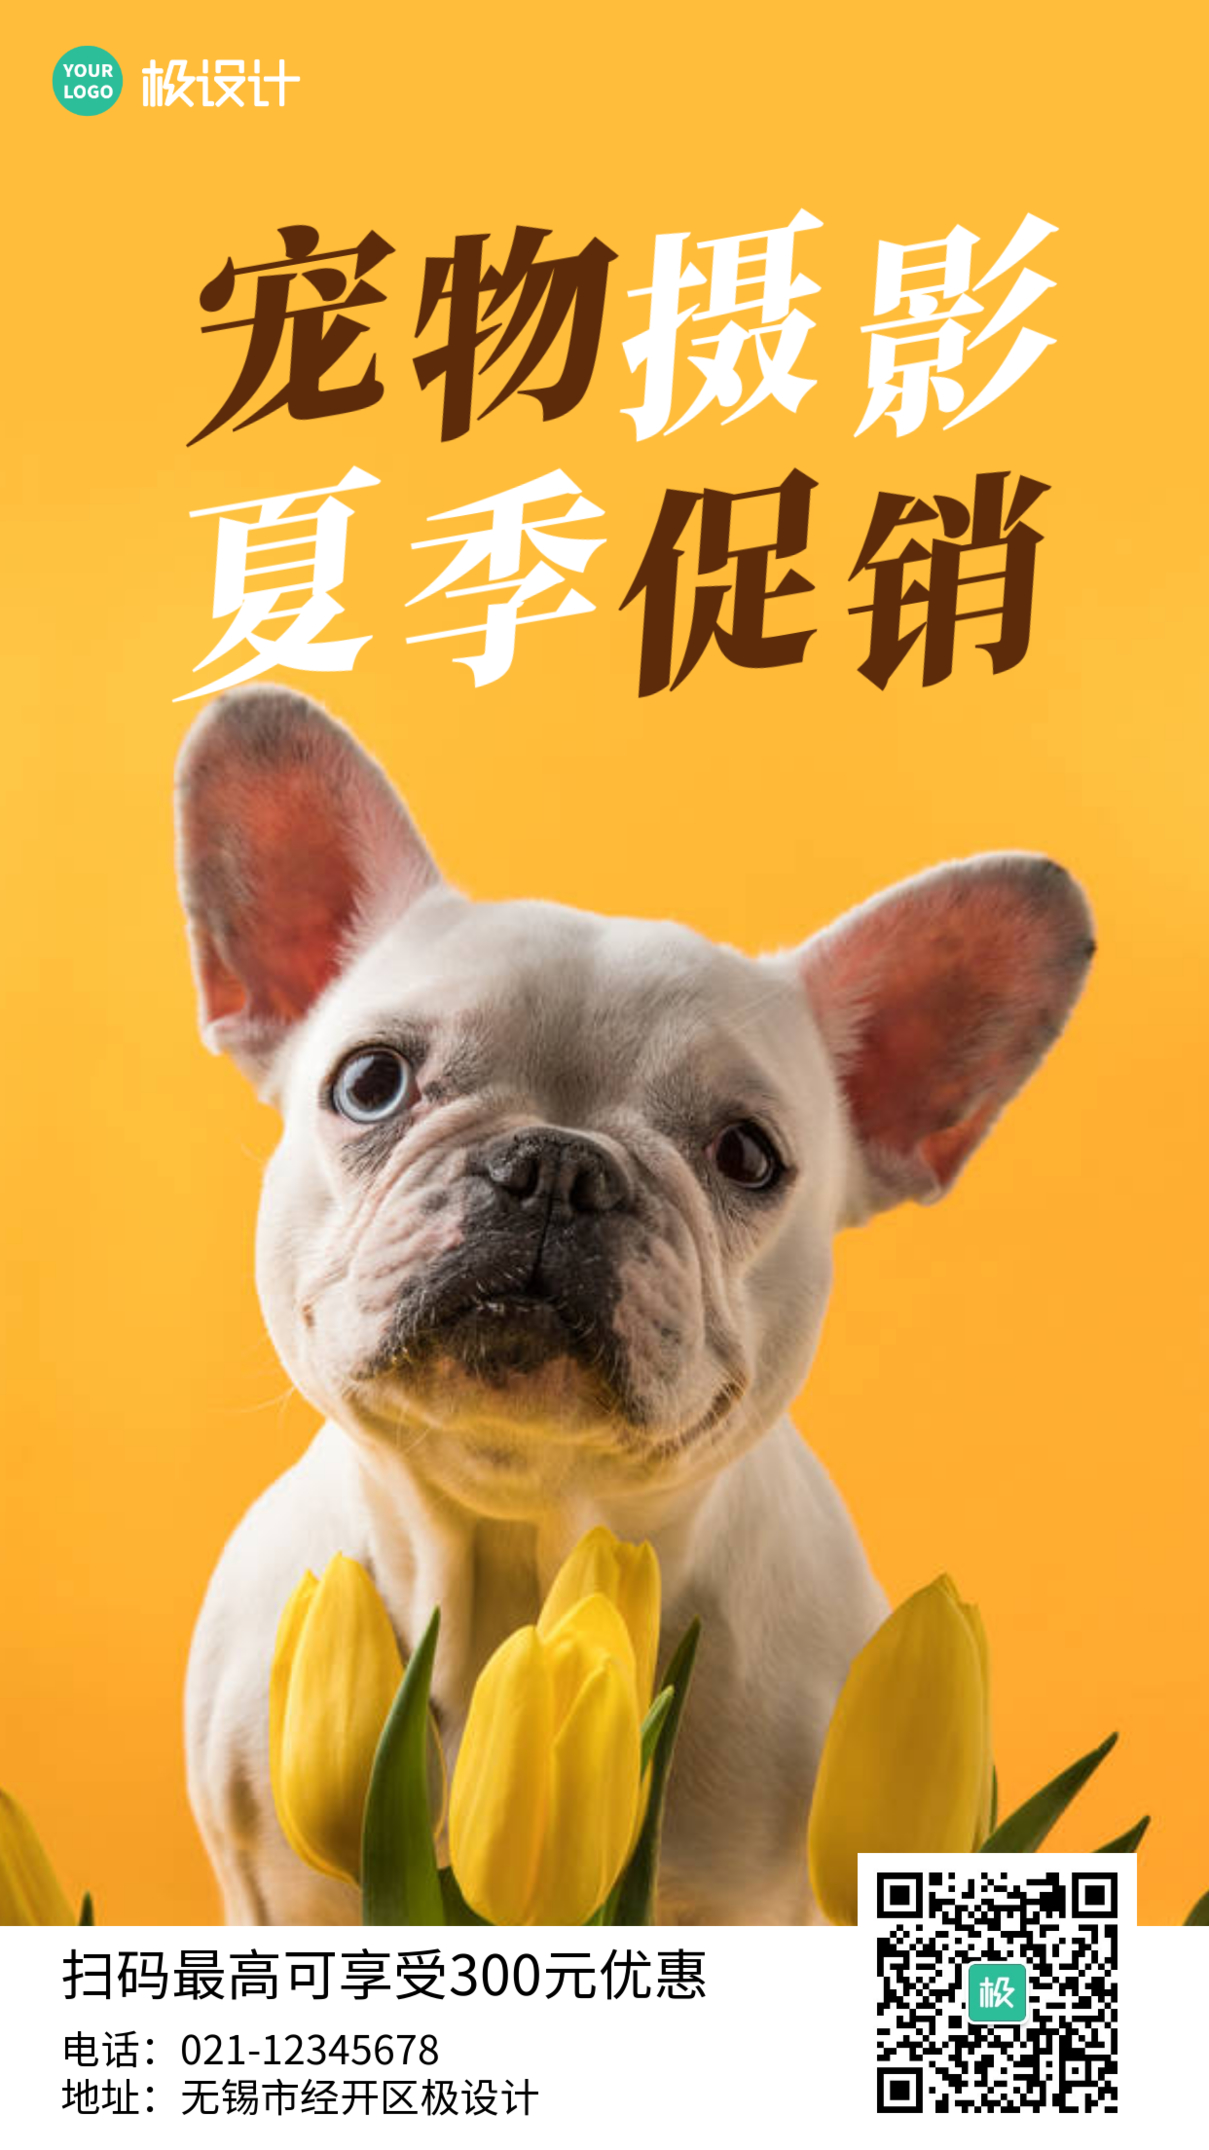 简约风格黄色宠物摄影夏季促销营销手机海报